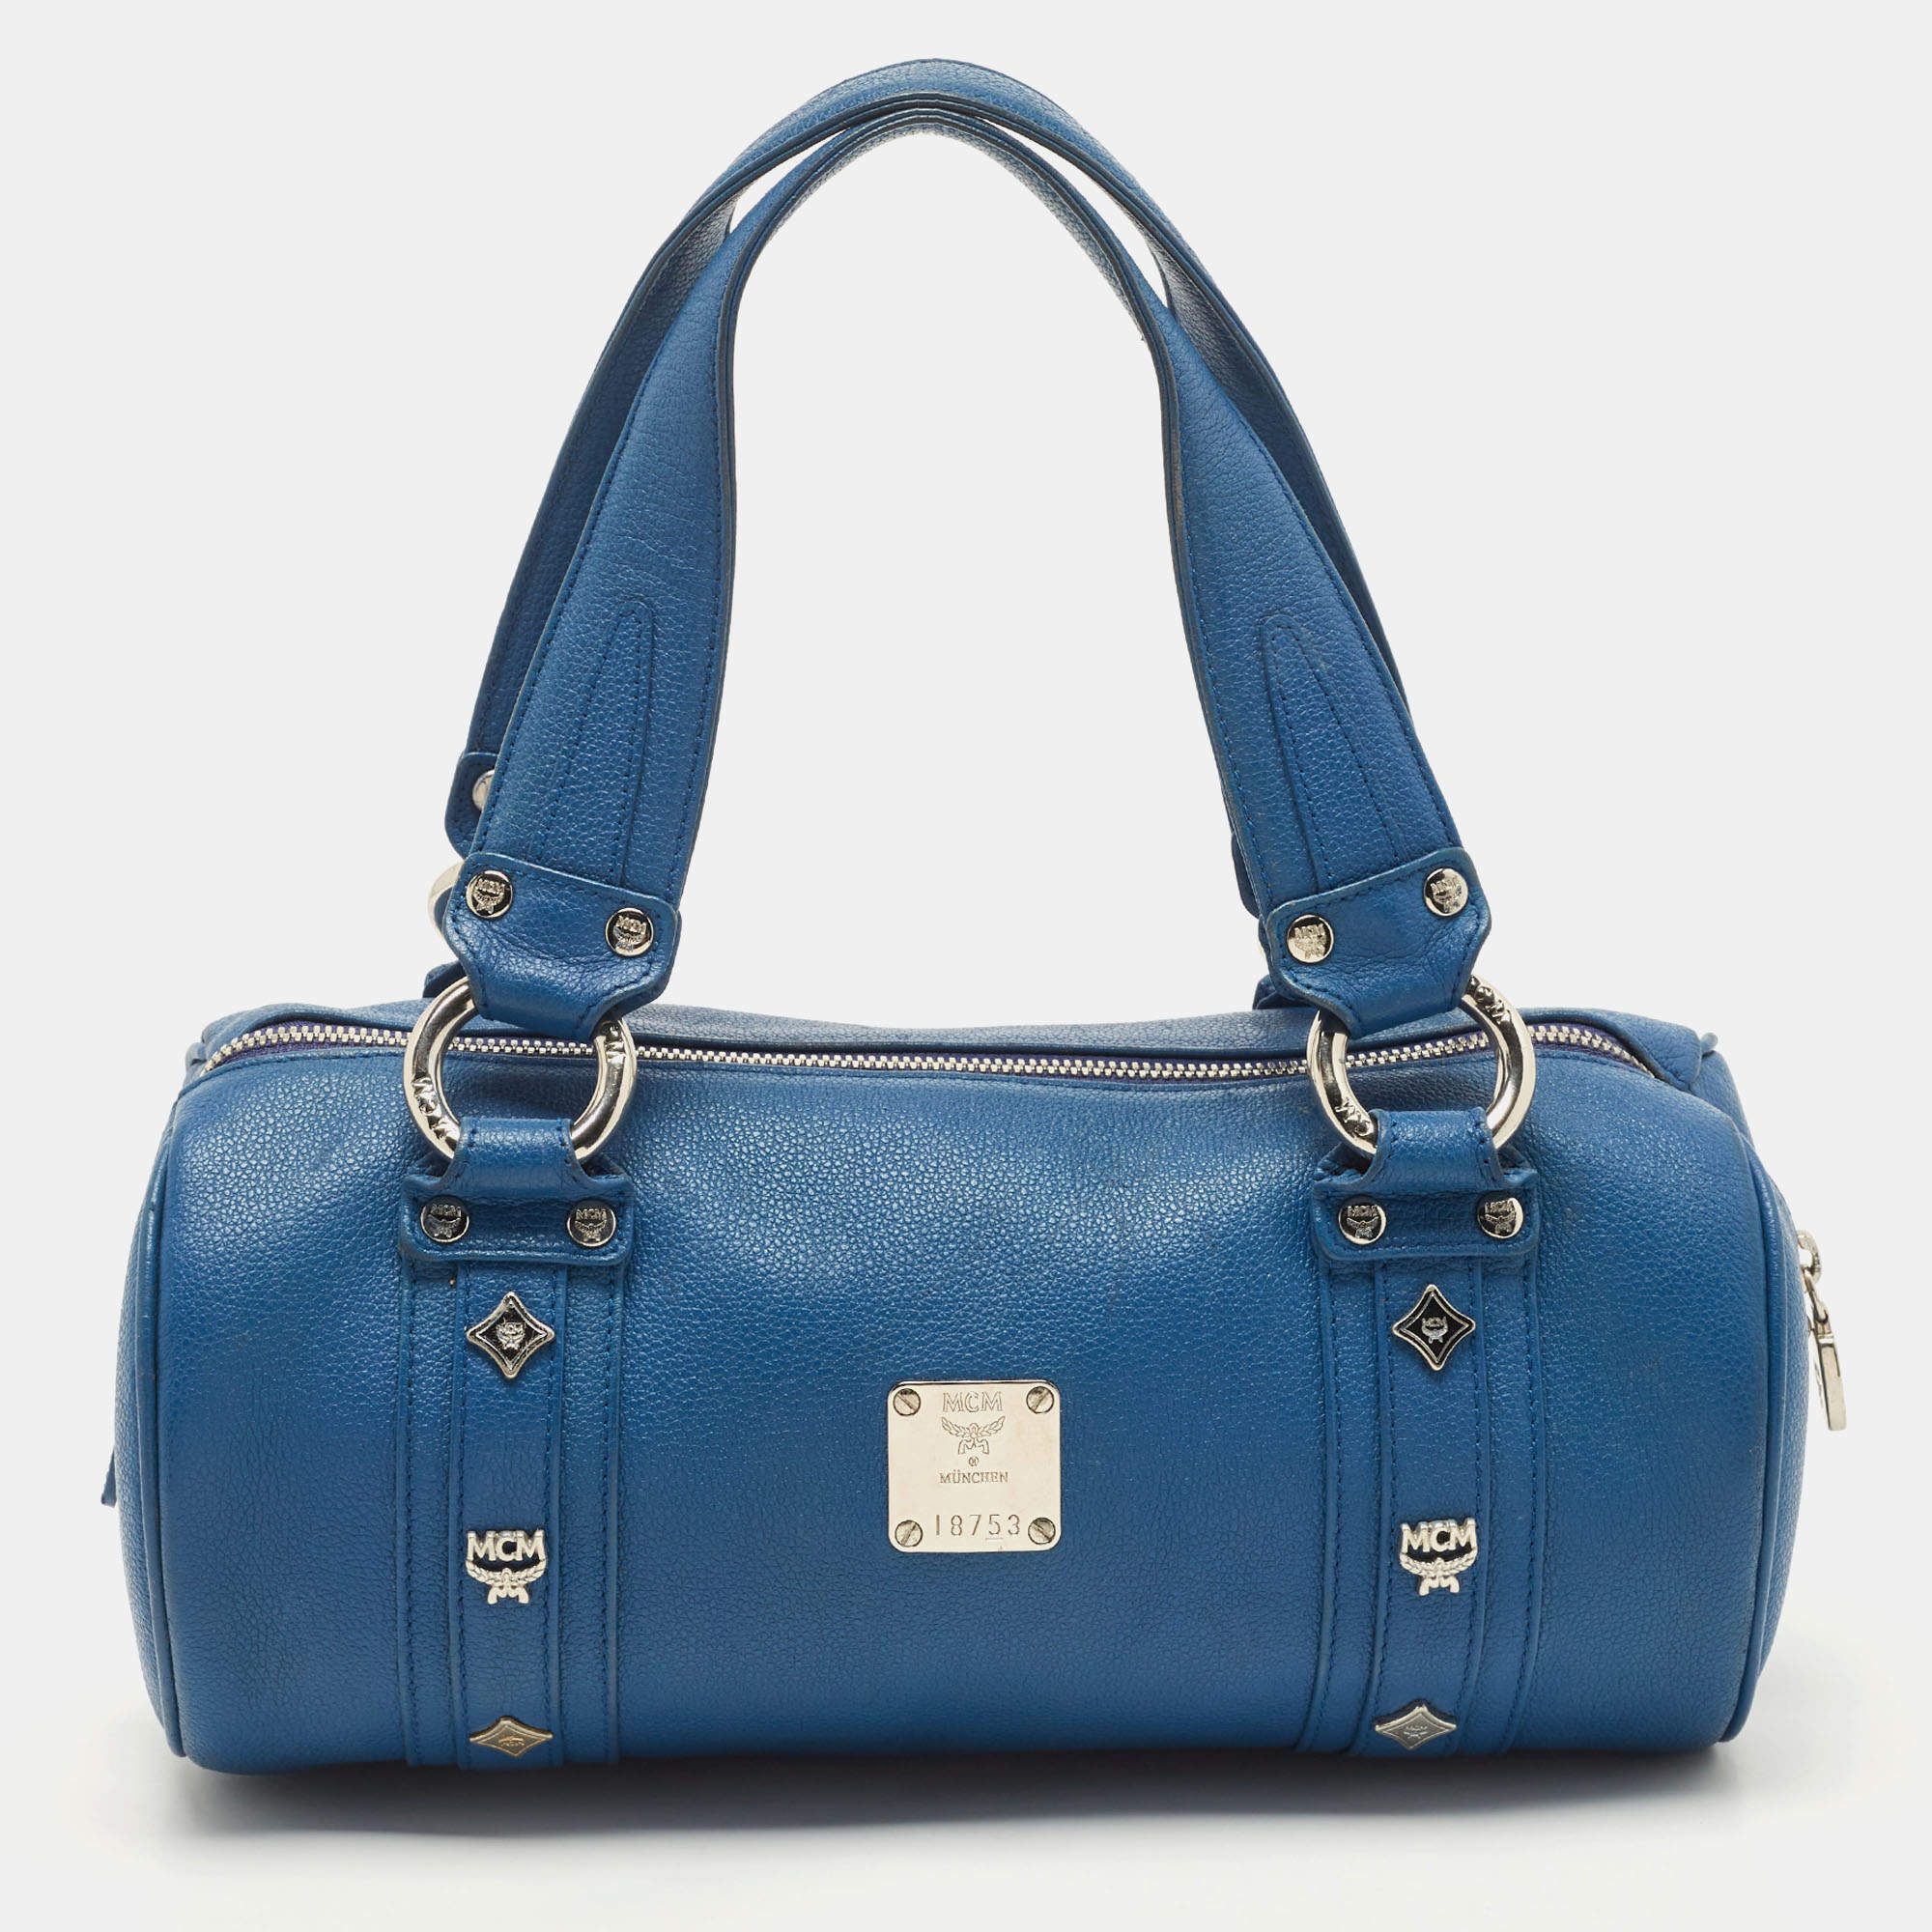 Guaranteed Authentic Vintage MCM Speedy Handbag for Sale in